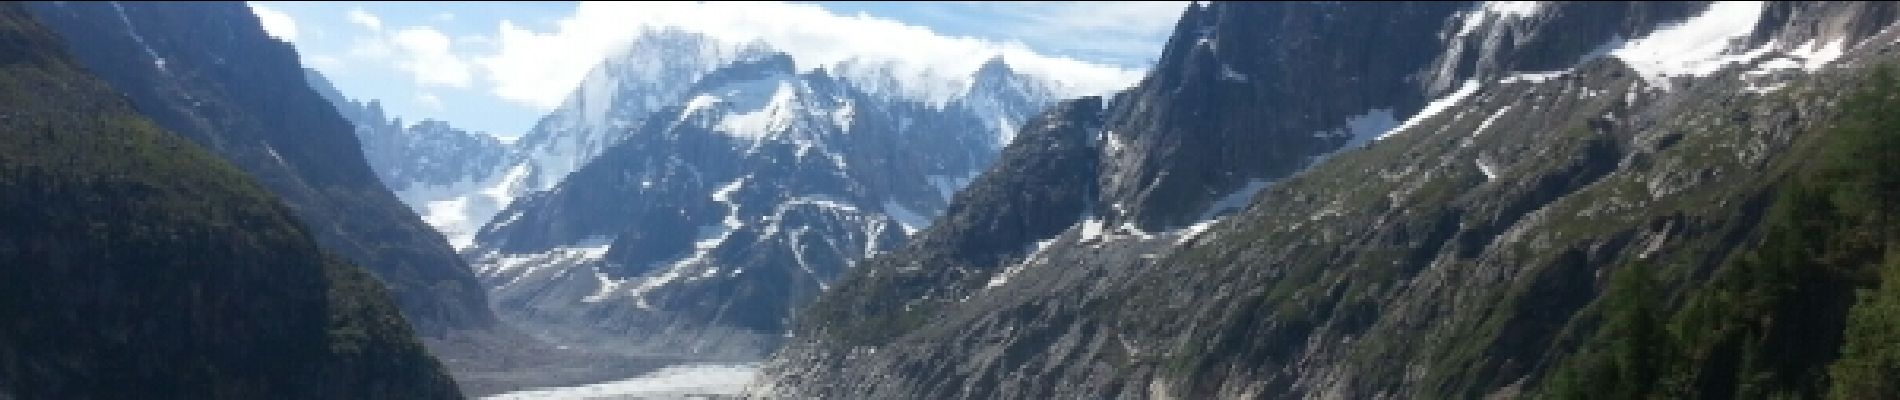 POI Chamonix-Mont-Blanc - arrivée à montenvers - Photo